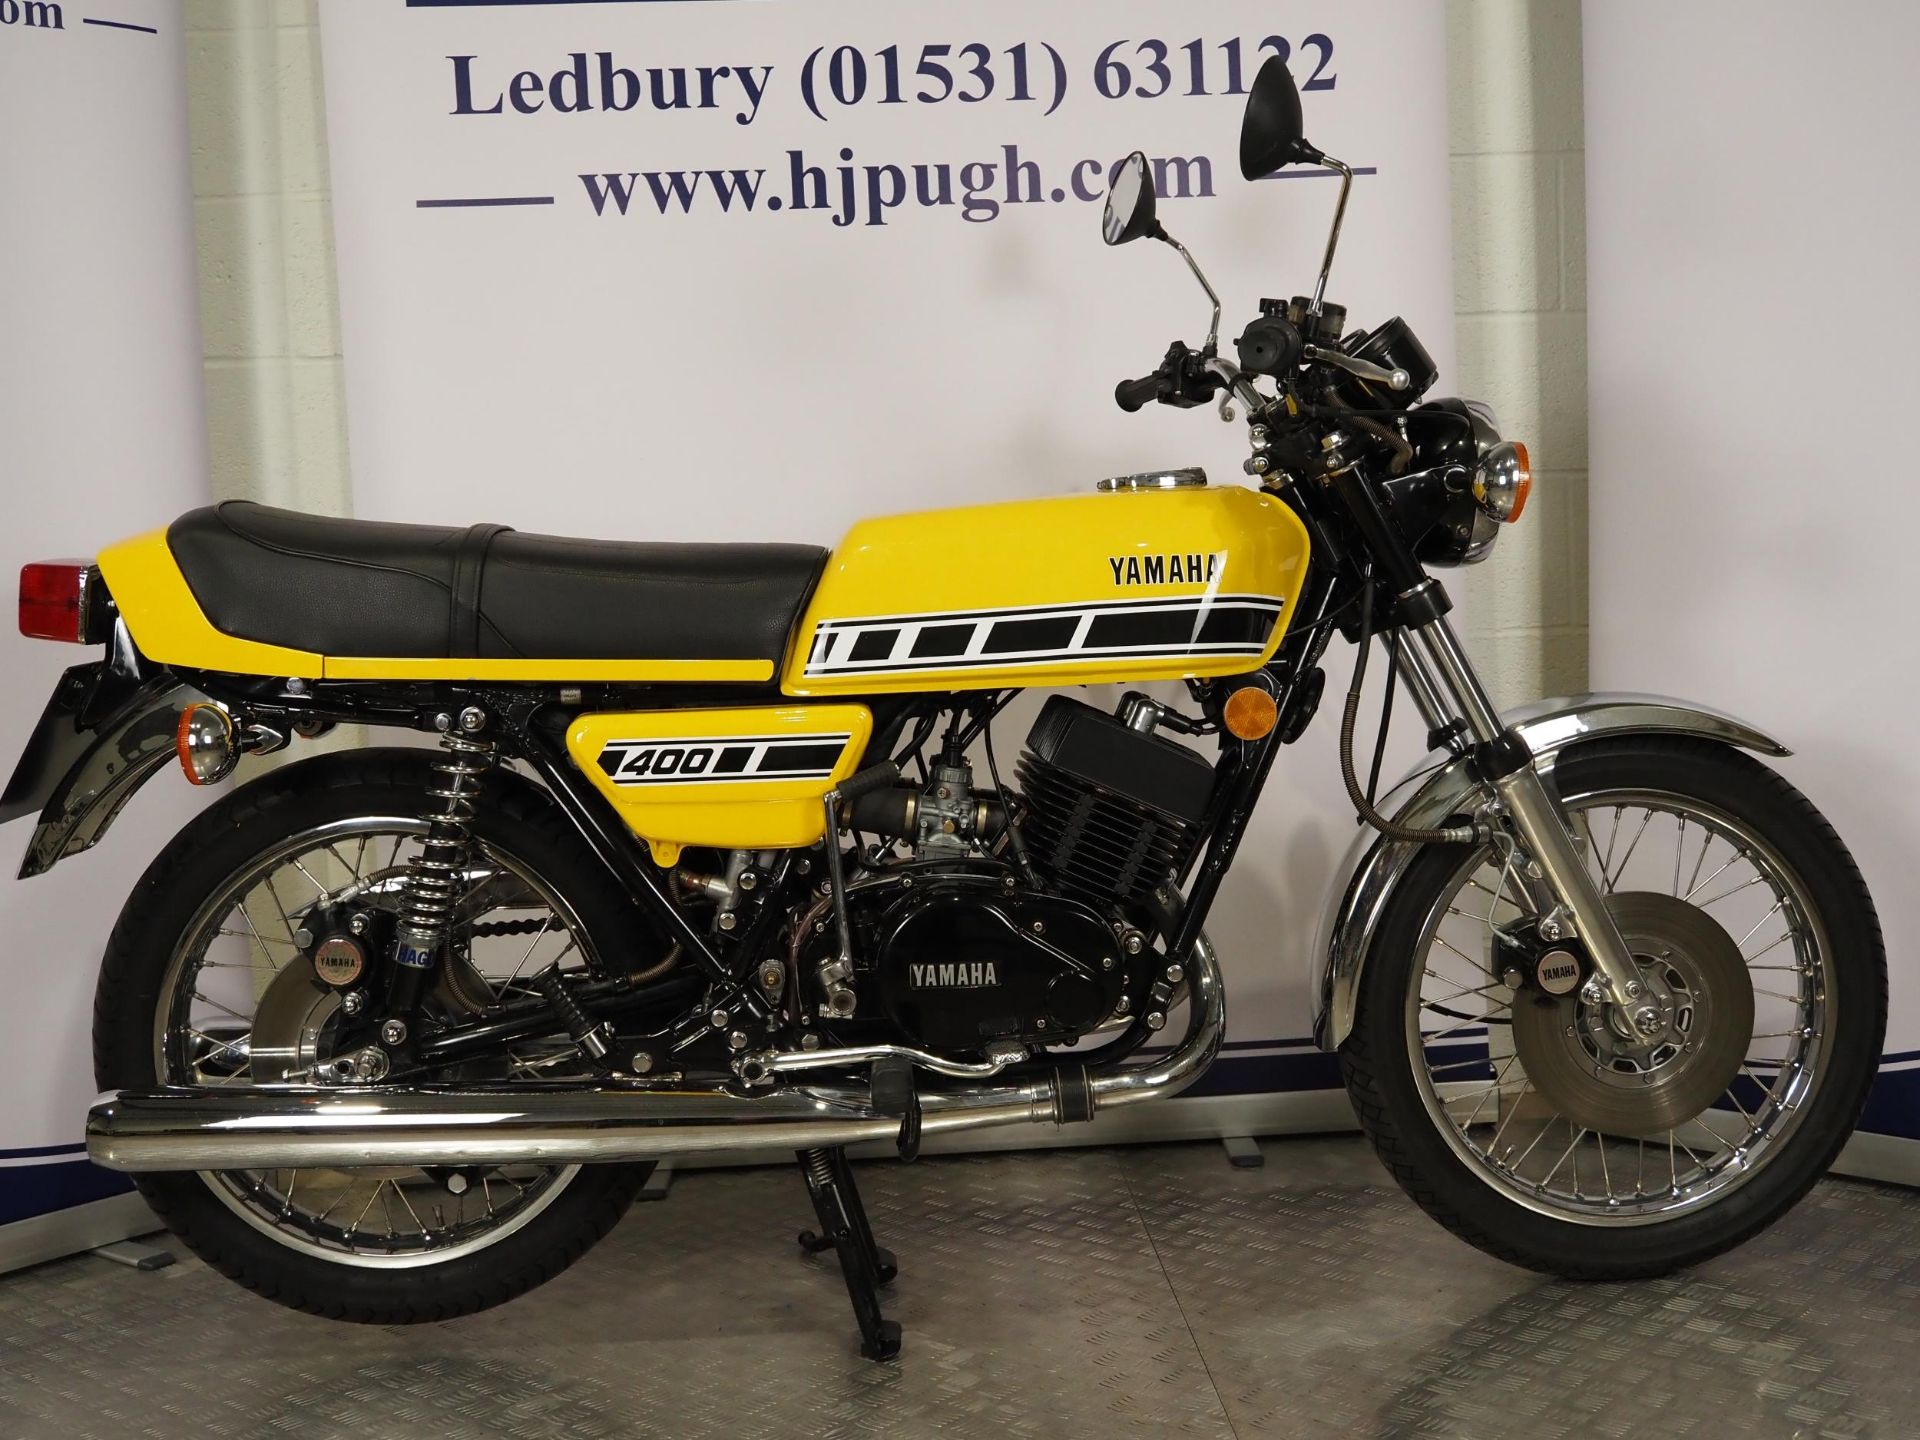 Yamaha RD 400 motorcycle. 1977. 400cc Frame No. 1A3-102493 Engine No. 1A3-102493 Runs and rides - Image 3 of 11